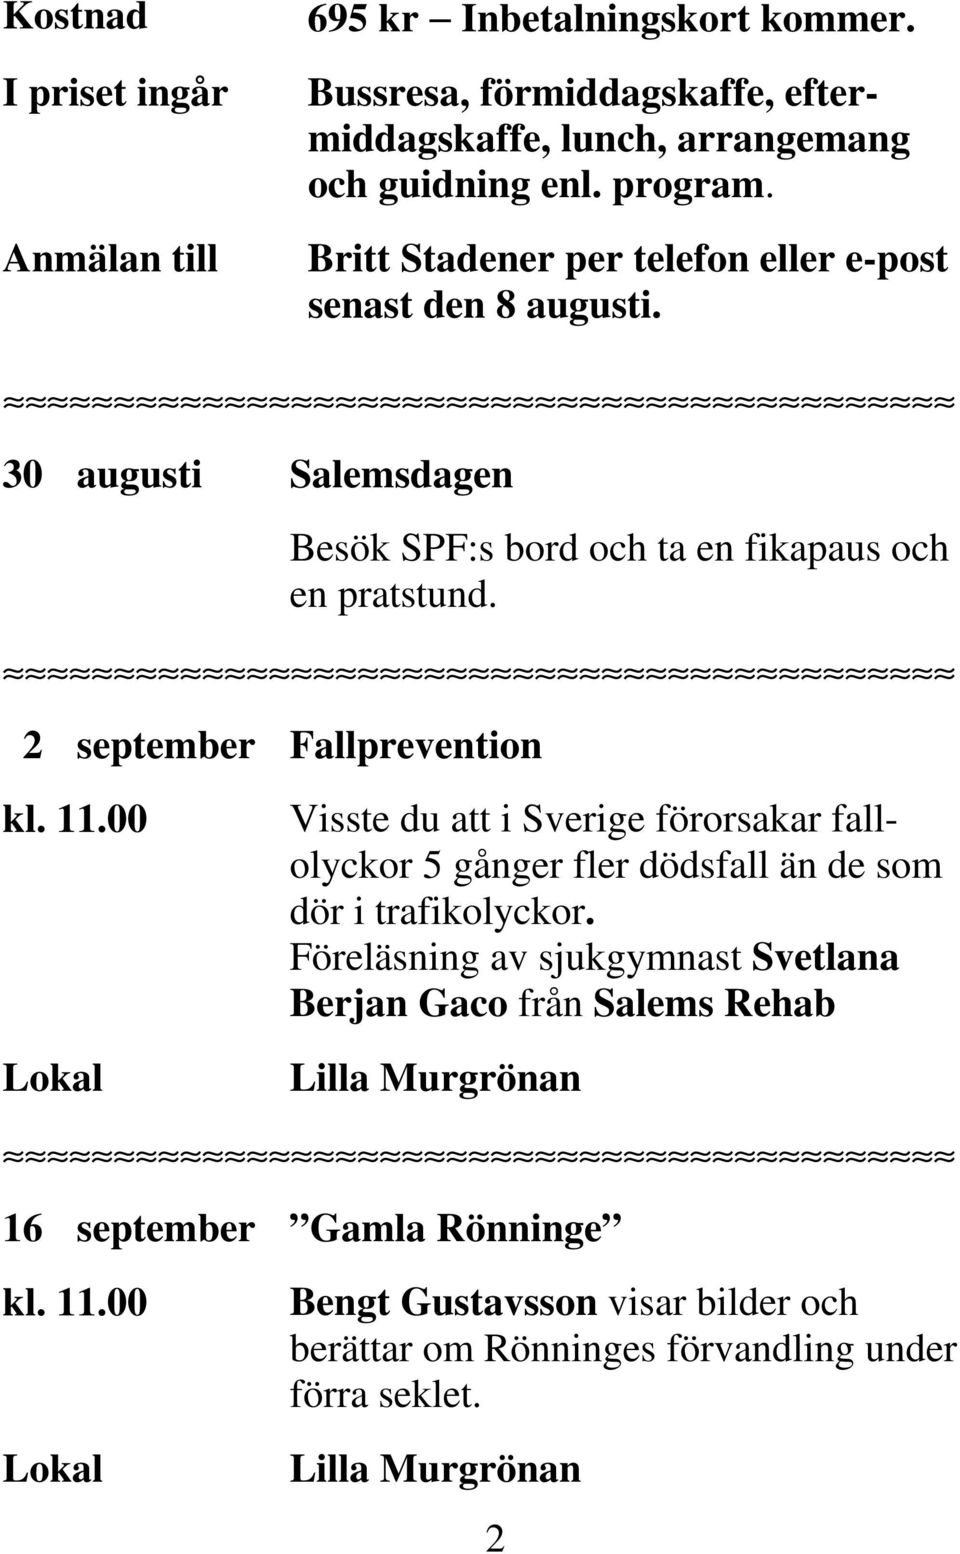 2 september Fallprevention Visste du att i Sverige förorsakar fallolyckor 5 gånger fler dödsfall än de som dör i trafikolyckor.